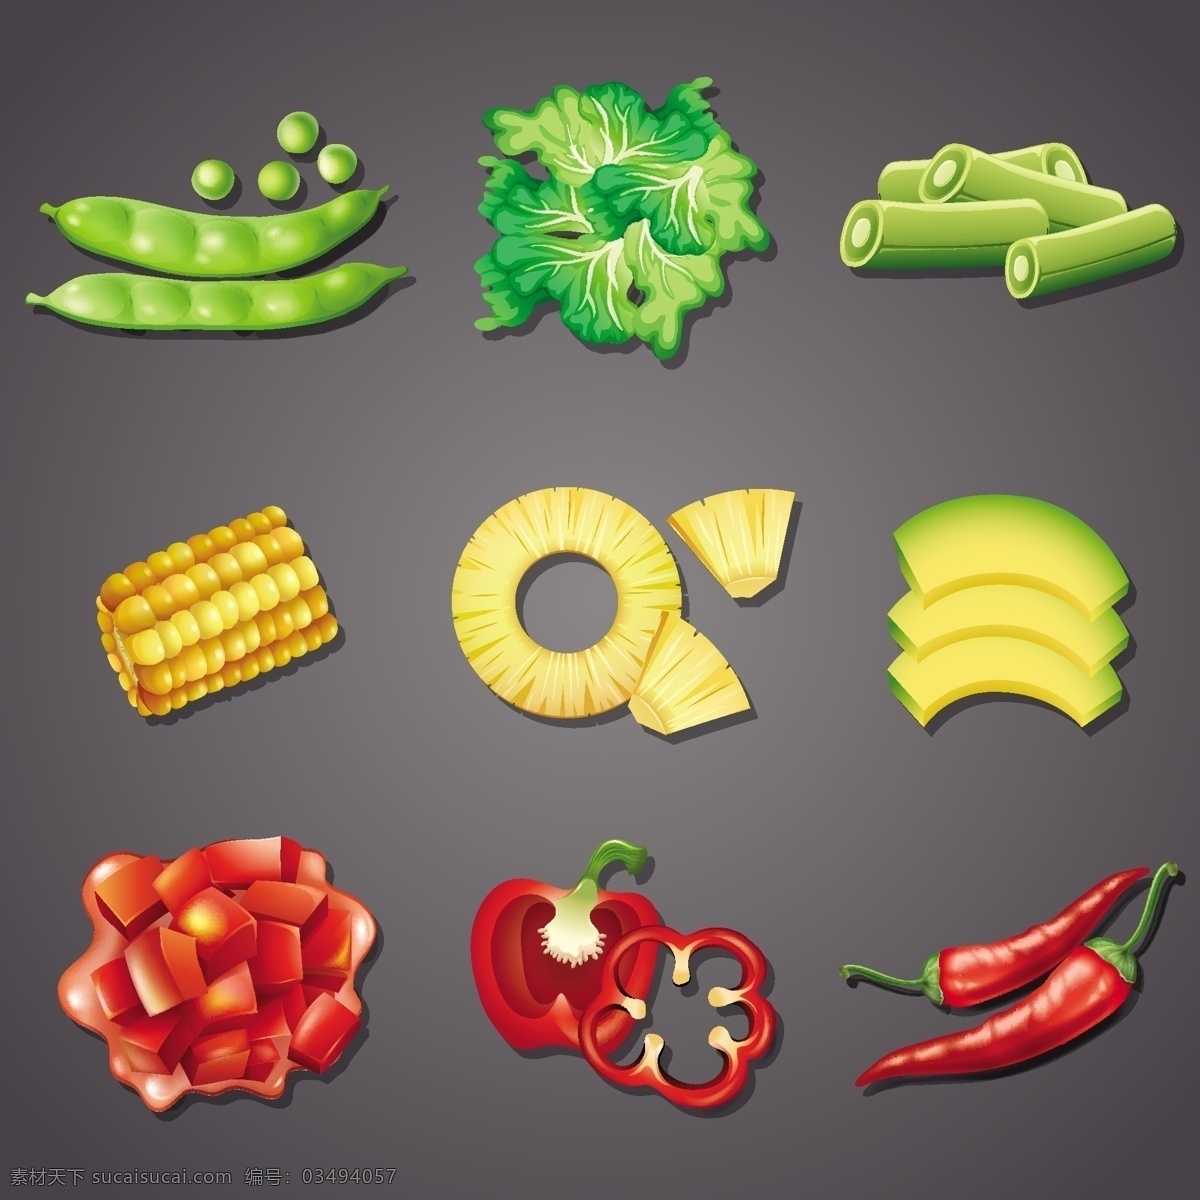 蔬菜矢量 蔬菜 豆子 玉米 辣椒 灯笼椒 南瓜 矢量素材 矢量广告设计 logo设计